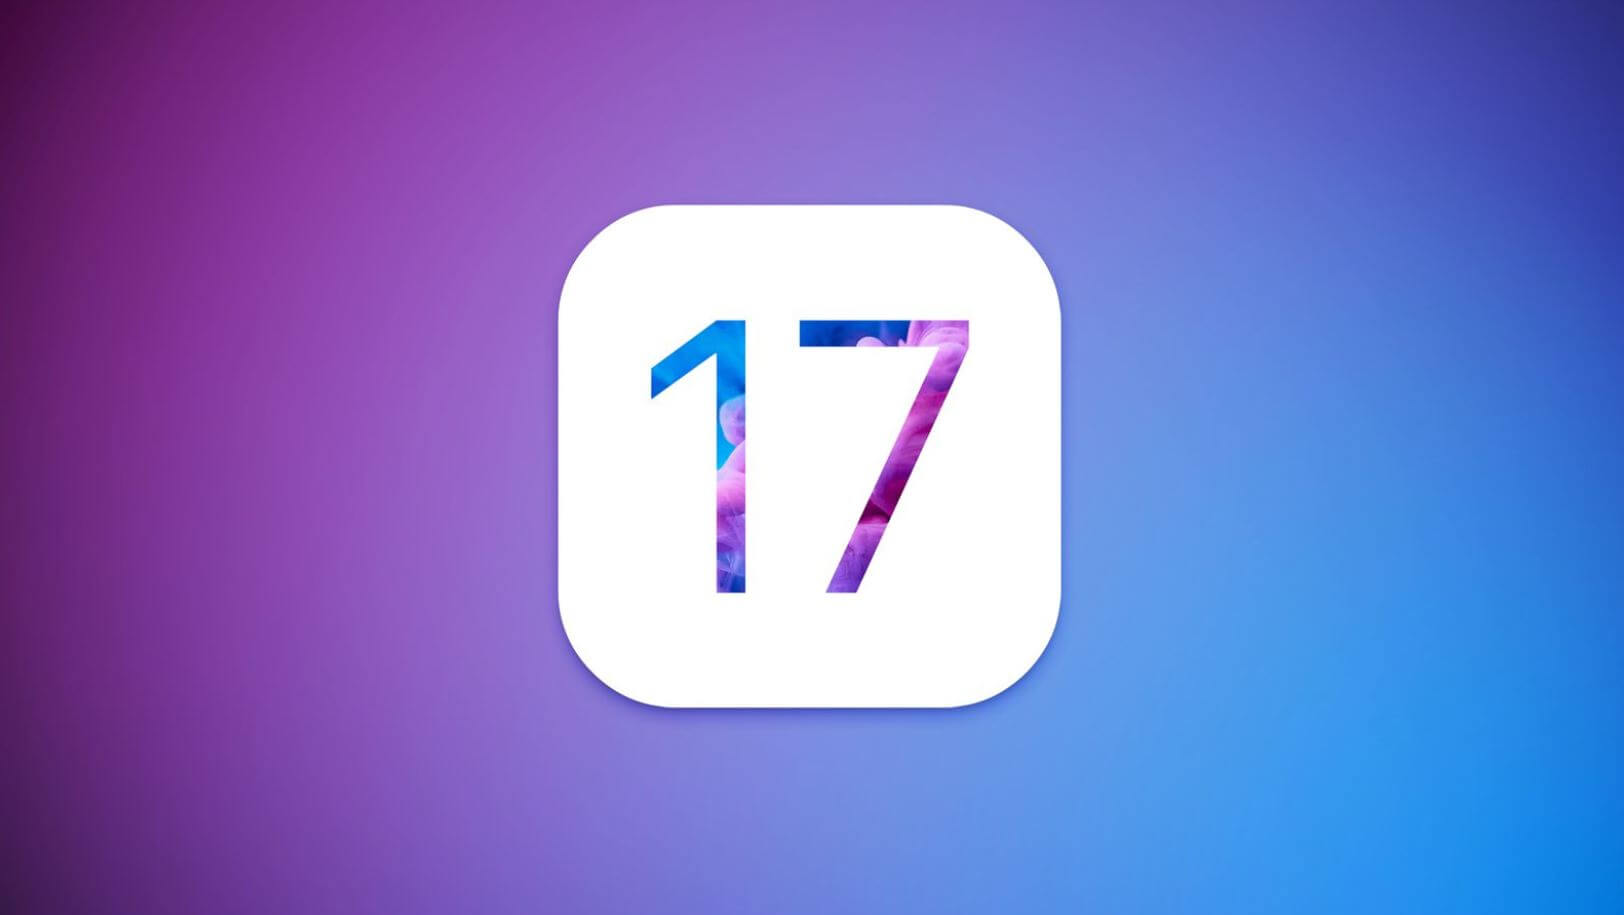 Apple выпустила обновленную iOS 17 beta 3 для разработчиков. Что нового и как установить ее бесплатно. Вышла третья бета-версия iOS 17. Фото.